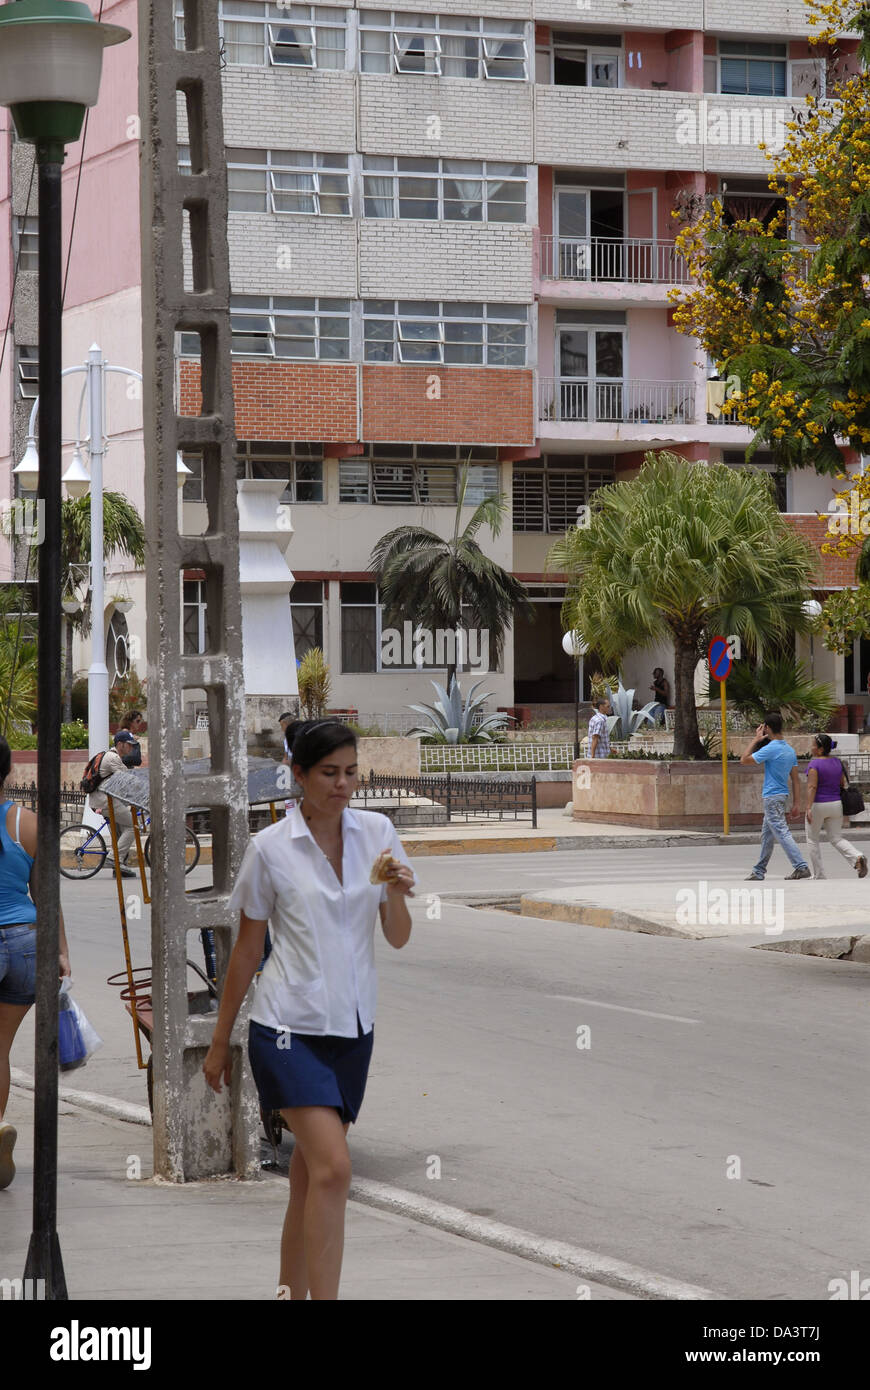 Street scene, Ciego de Avila, Cuba Stock Photo